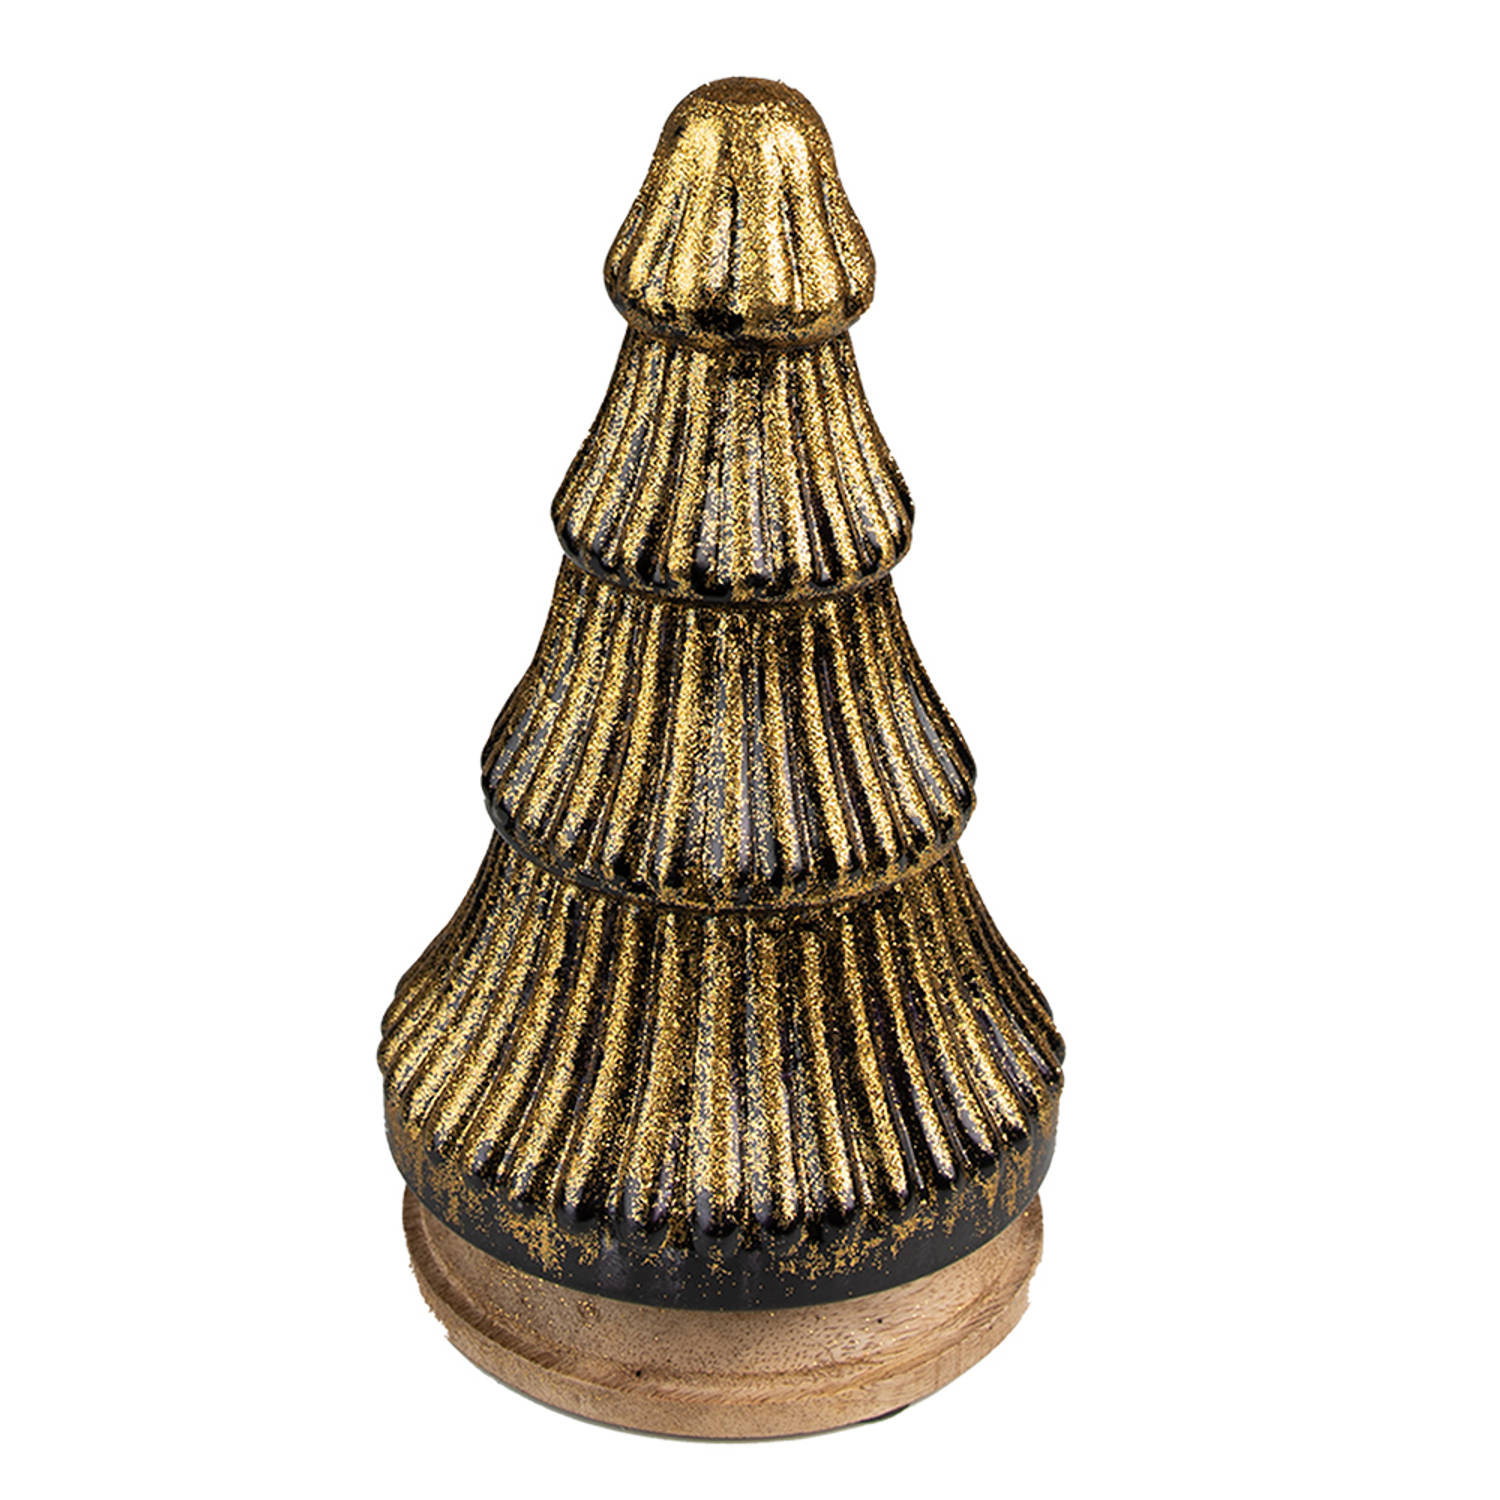 HAES DECO - Decoratieve Kerstboom - Formaat Ø 13x24 cm - Kleur Goudkleurig - Materiaal Hout / Glas - Kerstversiering, Kerstdecoratie